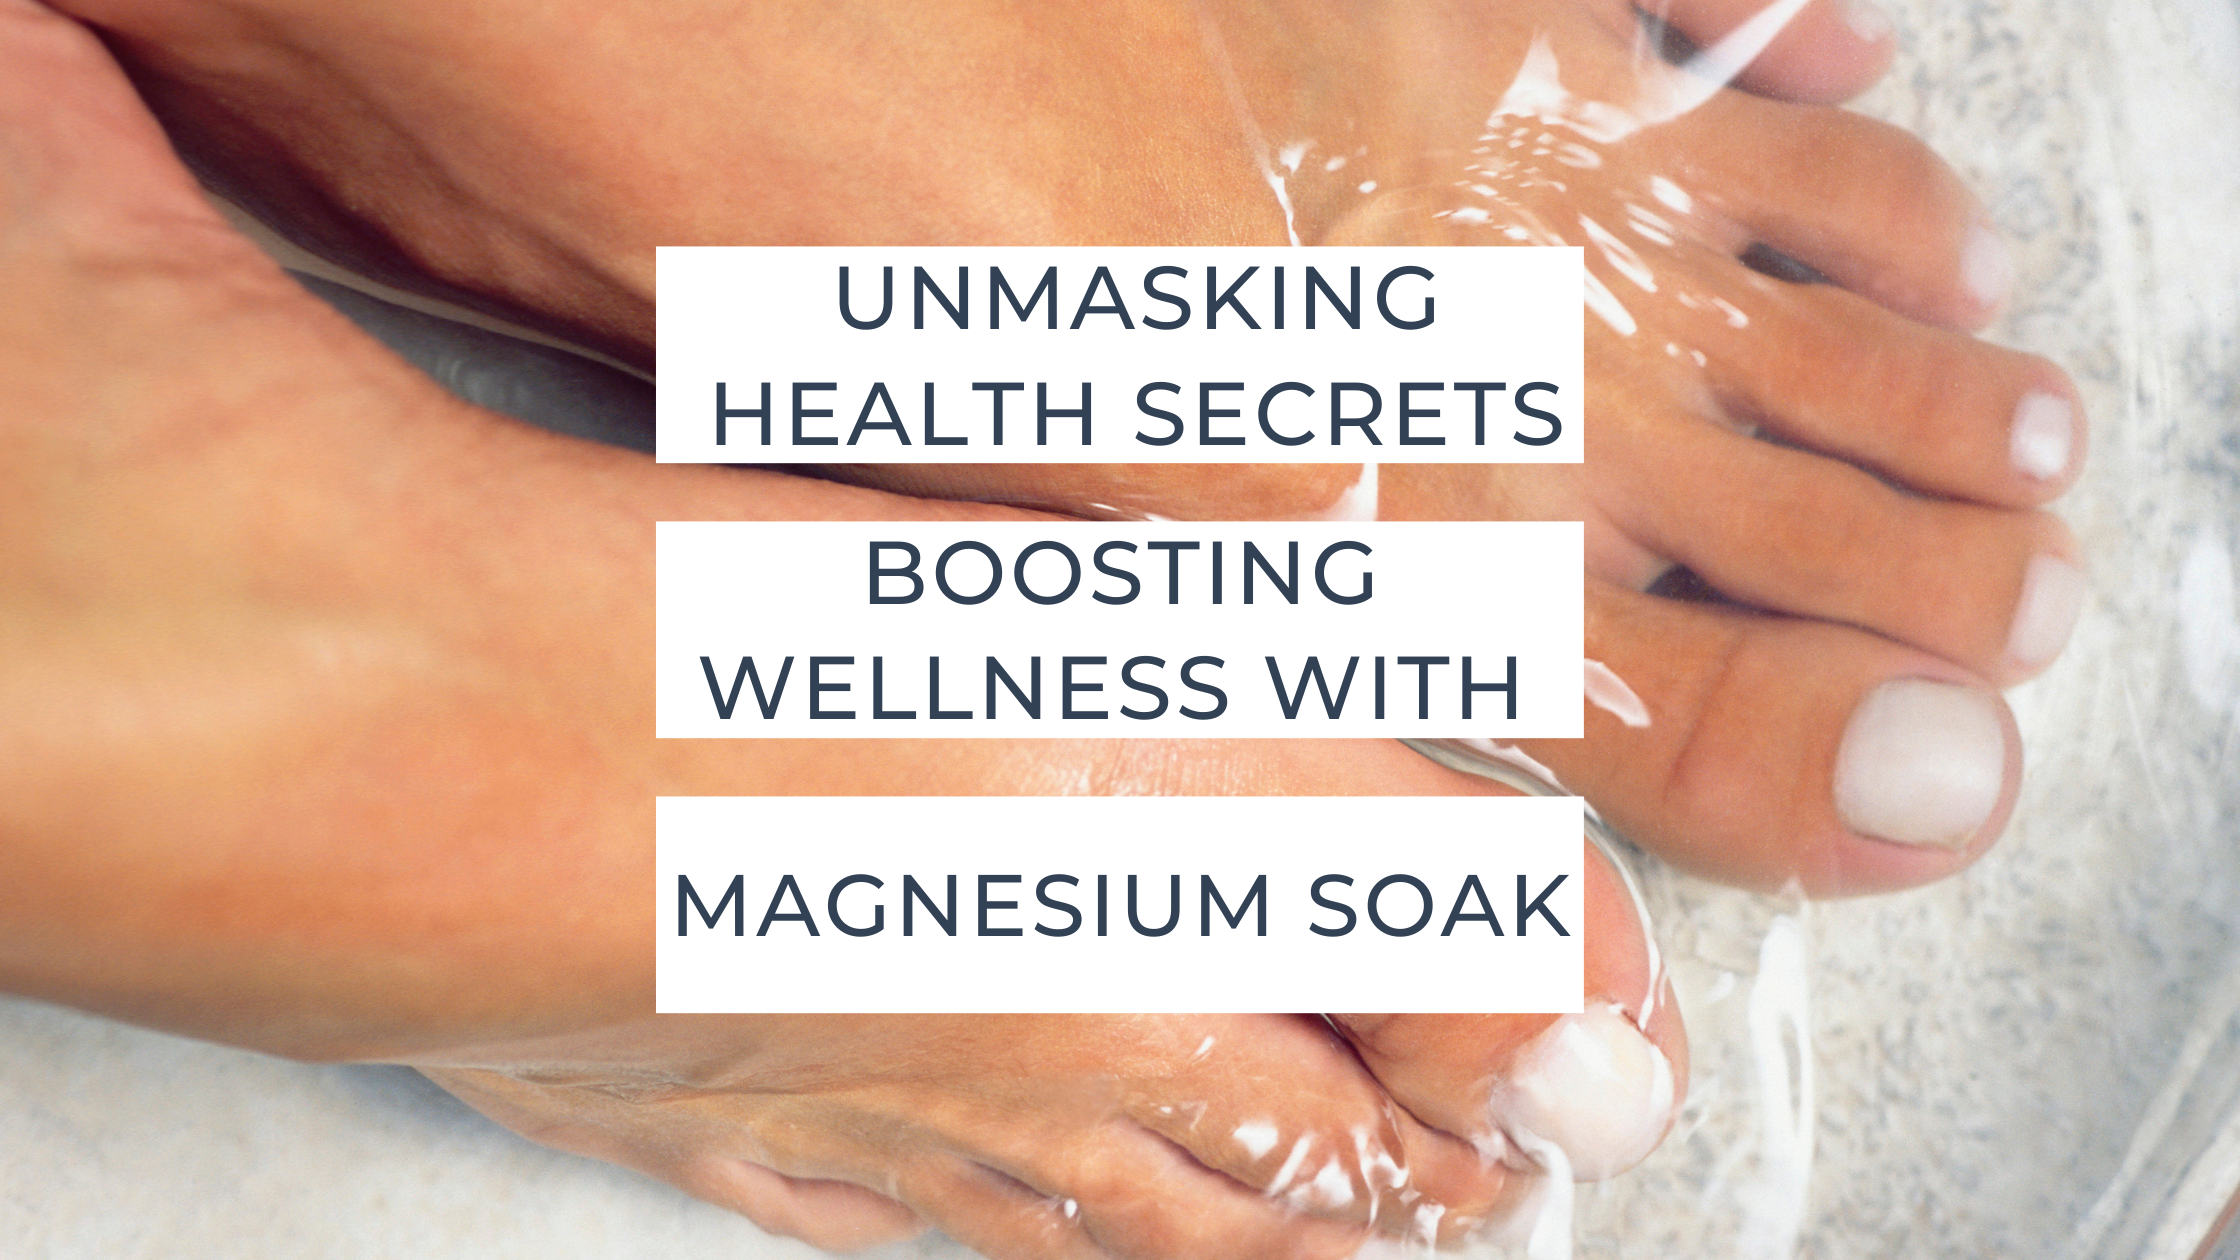 Unmasking health secrets